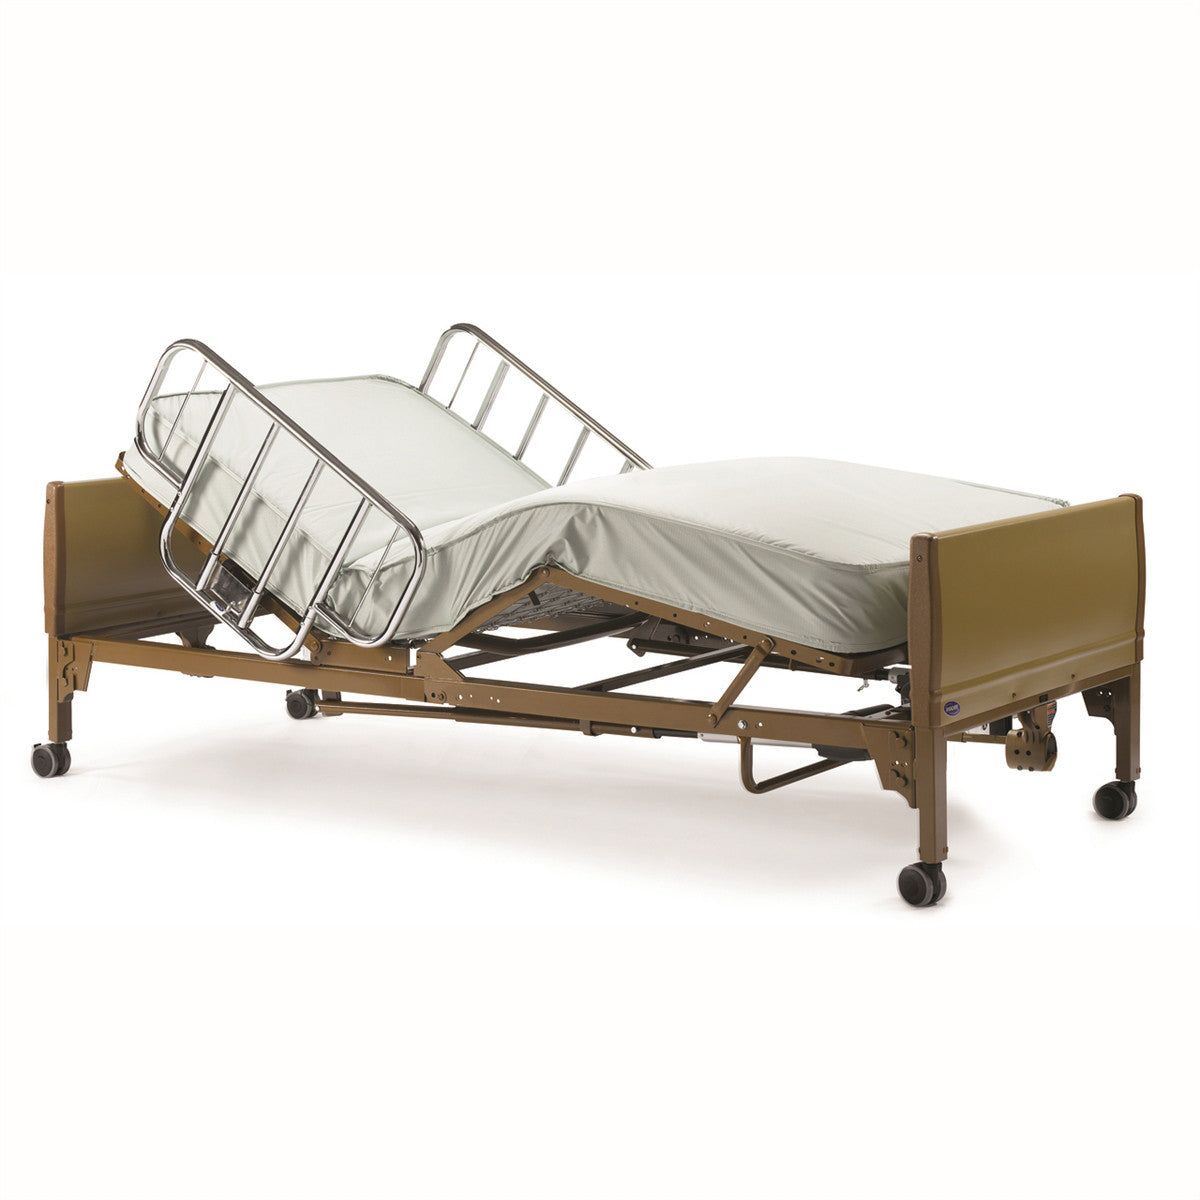 hospital beds home - Hospital bed, Hospital furniture, Hospital